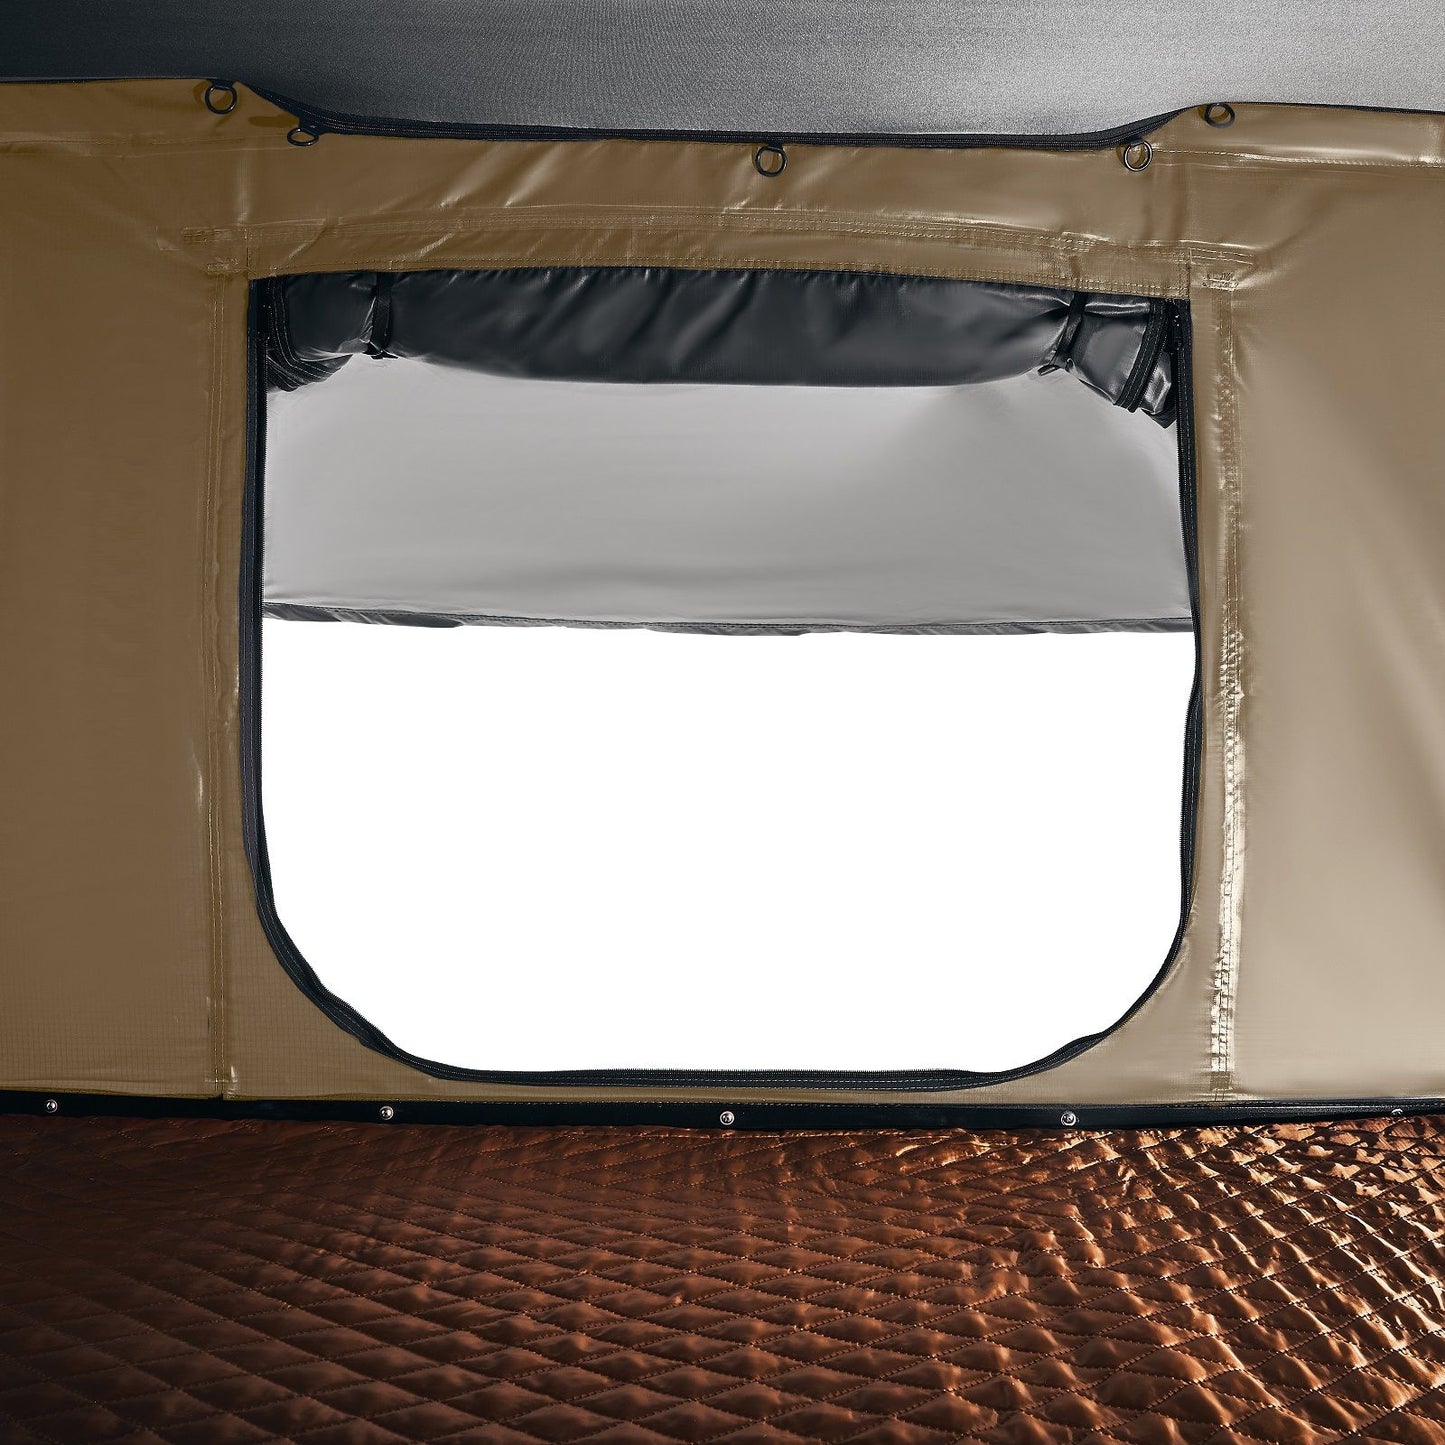 אוהל גג רכב חזק עם מעטפת קשיח יוטה 128 ס"מ (אוטומטי)